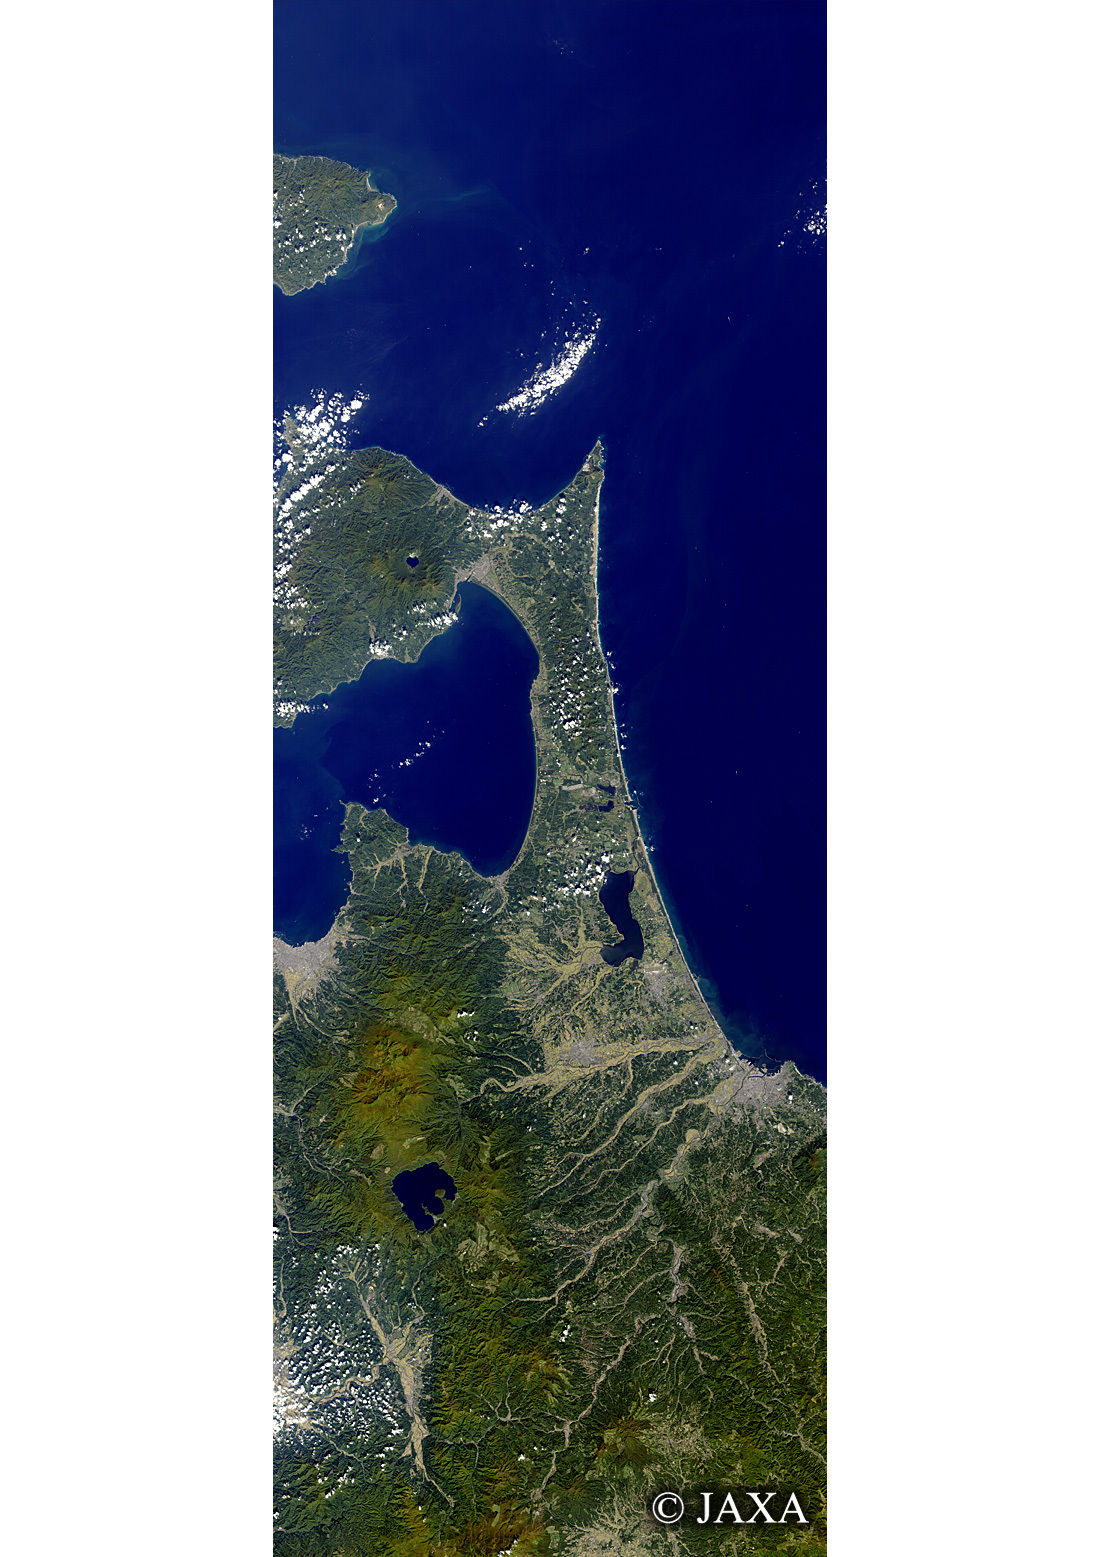 だいちから見た日本の都市 下北半島:衛星画像